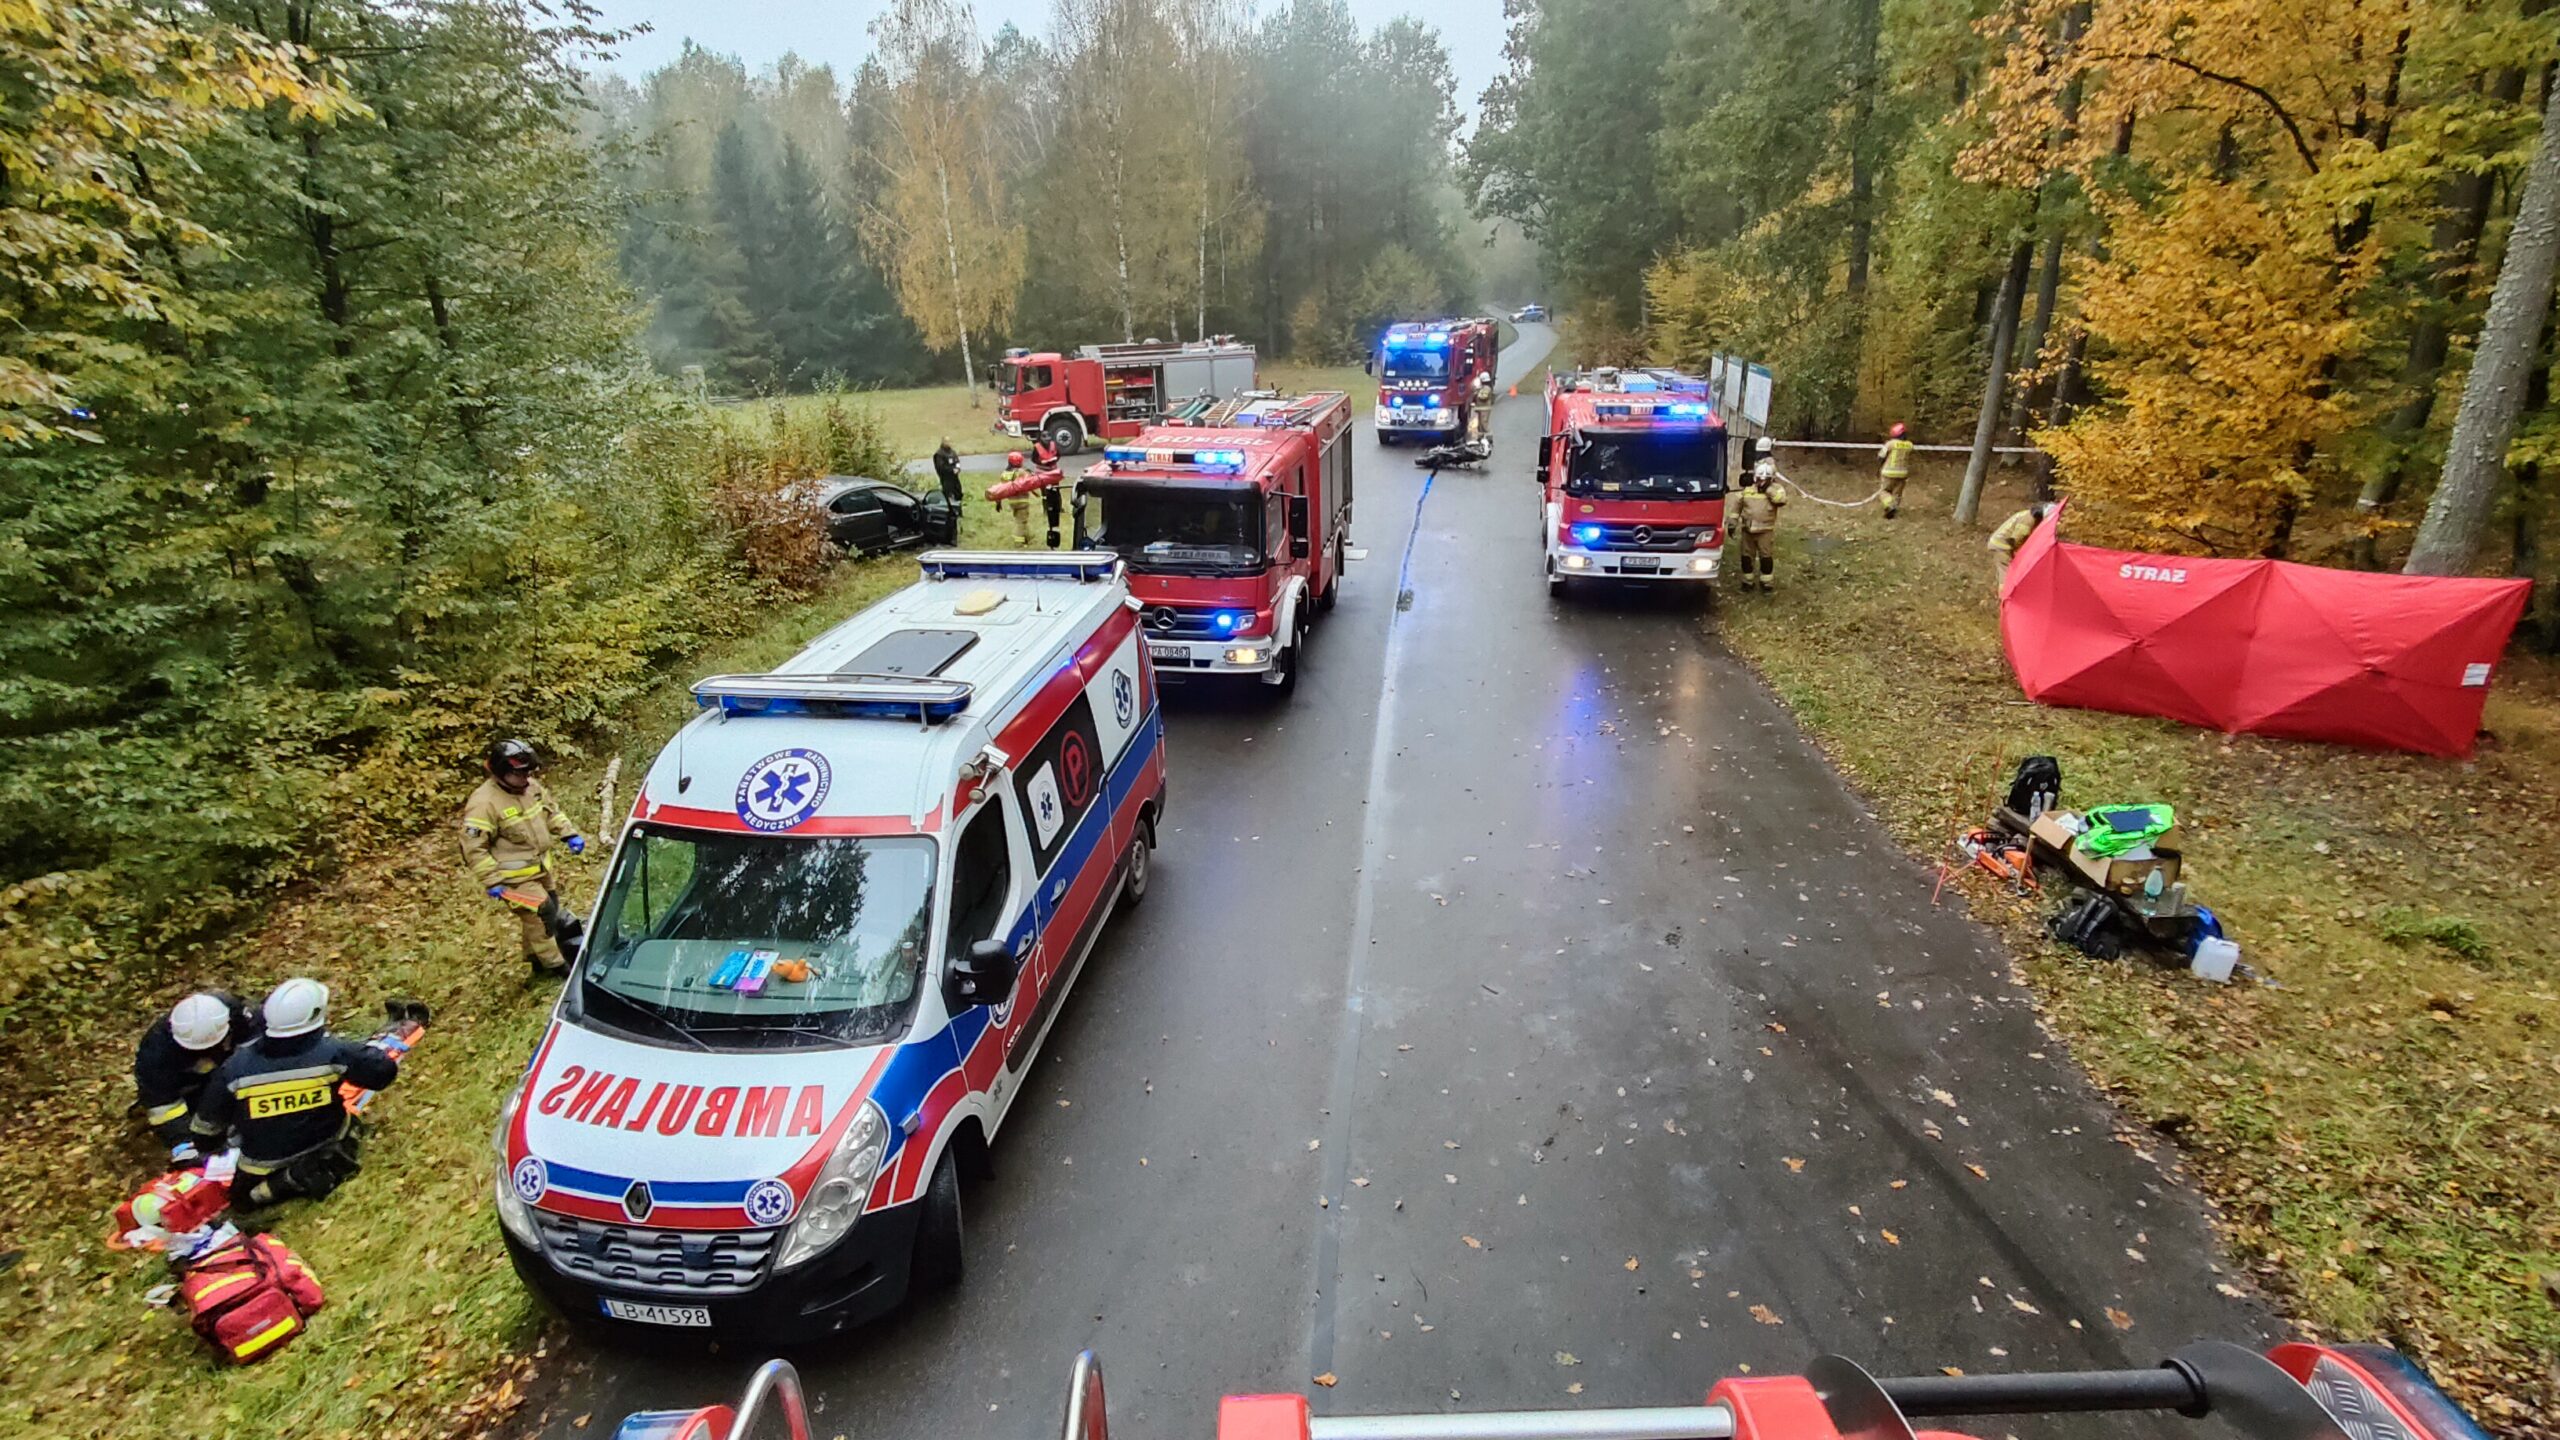 Cztery pojazdy pożarnicze i ambulans ustawione na leśnej drodze. Strażacy podzieleni na grupy ćwiczą udzielanie pierwszej pomocy przedmedycznej. Po lewej stronie w krzakach znajduje się rozbity samochód osobowy. Po prawej stronie rozstawiony jest parawan